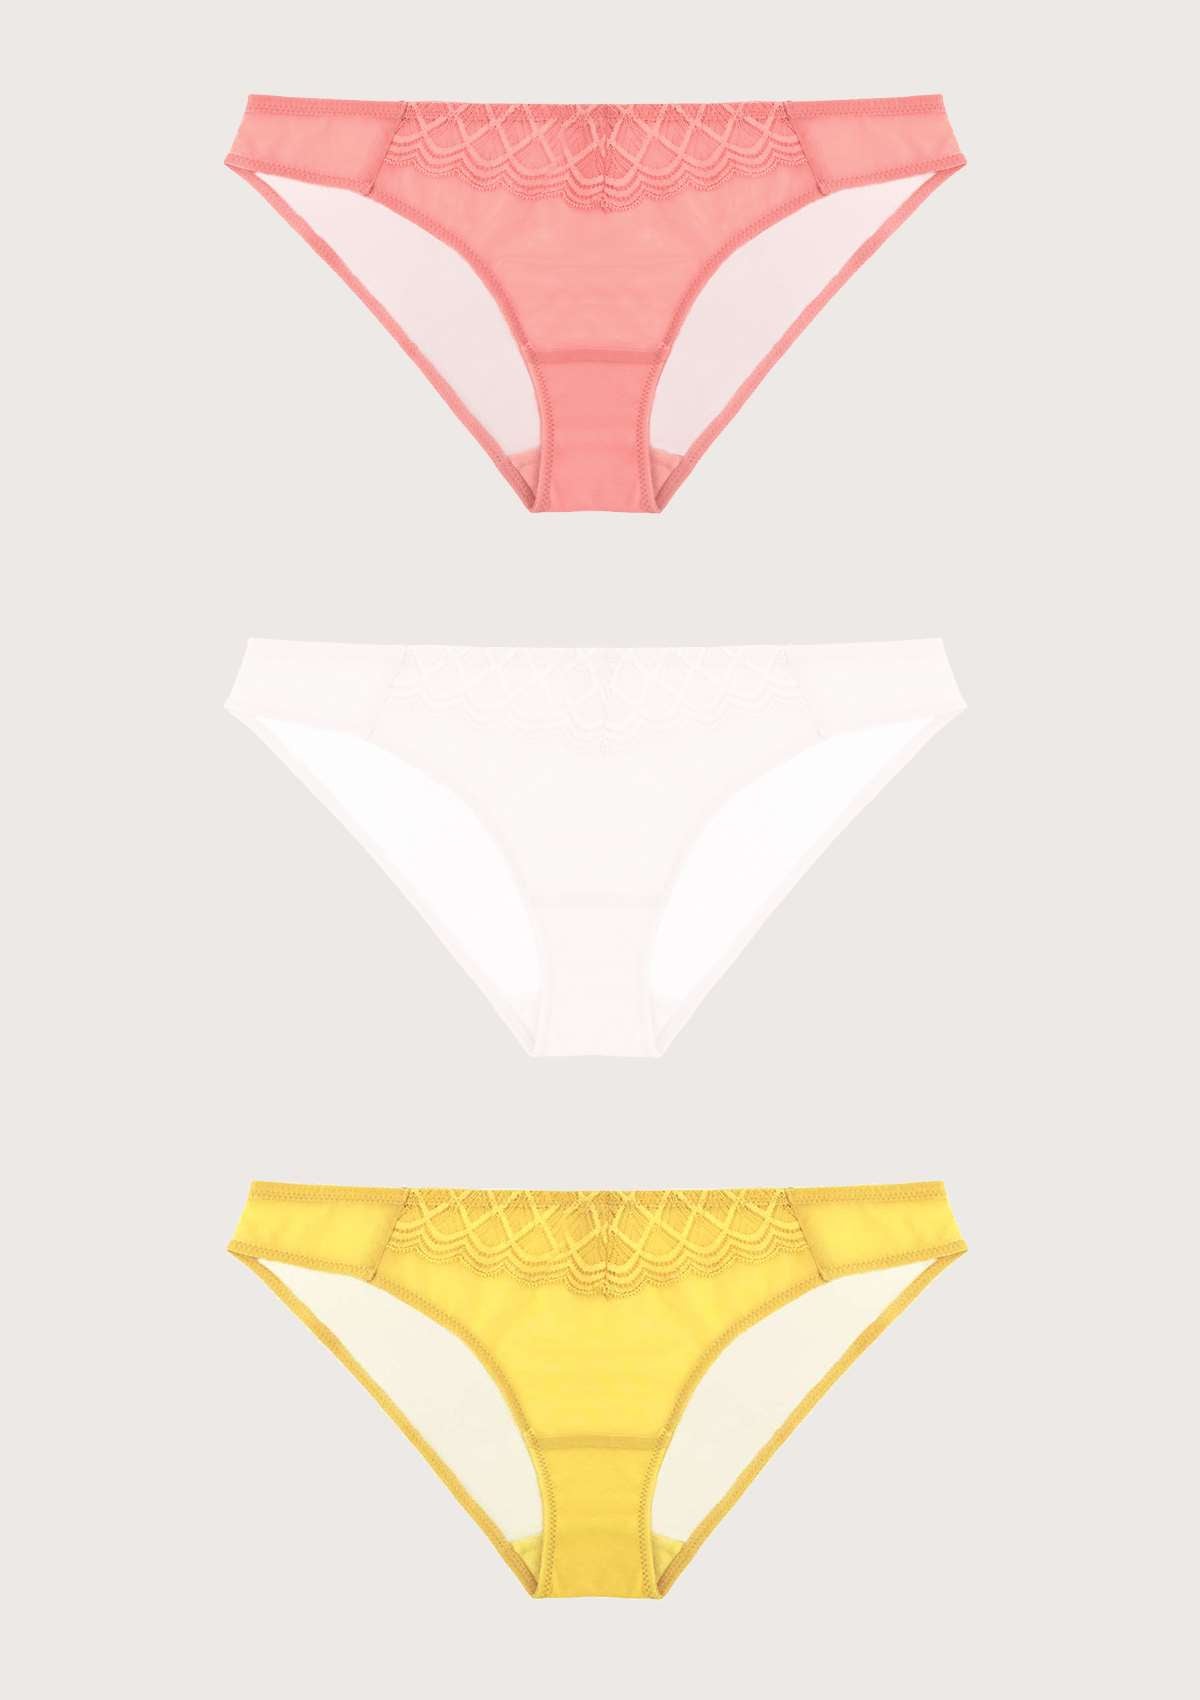 HSIA Plaid Lace Bikini Panties 3 Pack - L / Black+Yellow+Pink